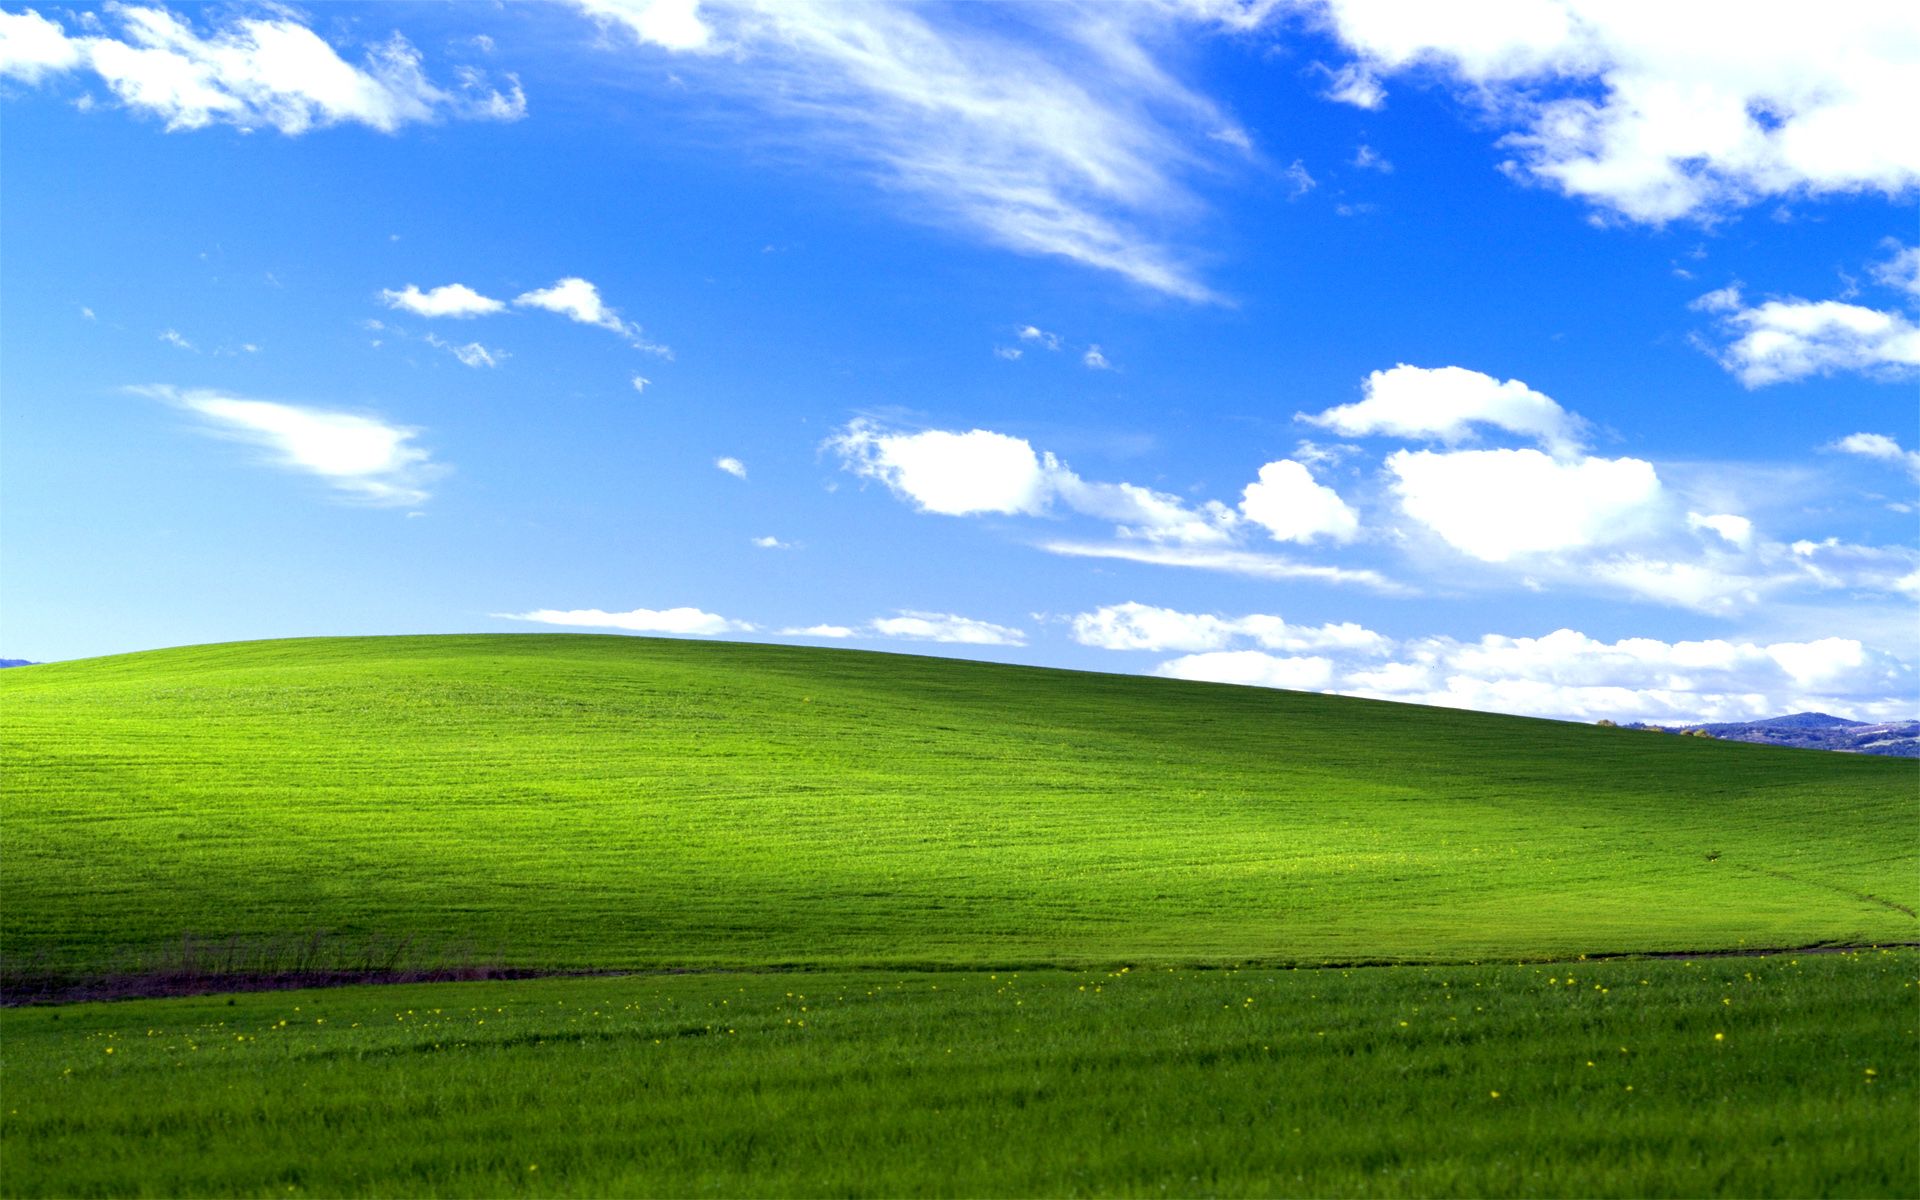 Những hình nền Windows XP đẹp mắt chắc chắn sẽ khiến bạn không thể rời mắt khỏi màn hình. Với chất lượng hình ảnh tuyệt vời, bạn sẽ cảm thấy như được đưa vào thế giới ảo tuyệt vời, giúp làm cho mỗi ngày của bạn trở nên đặc biệt và phong phú hơn.